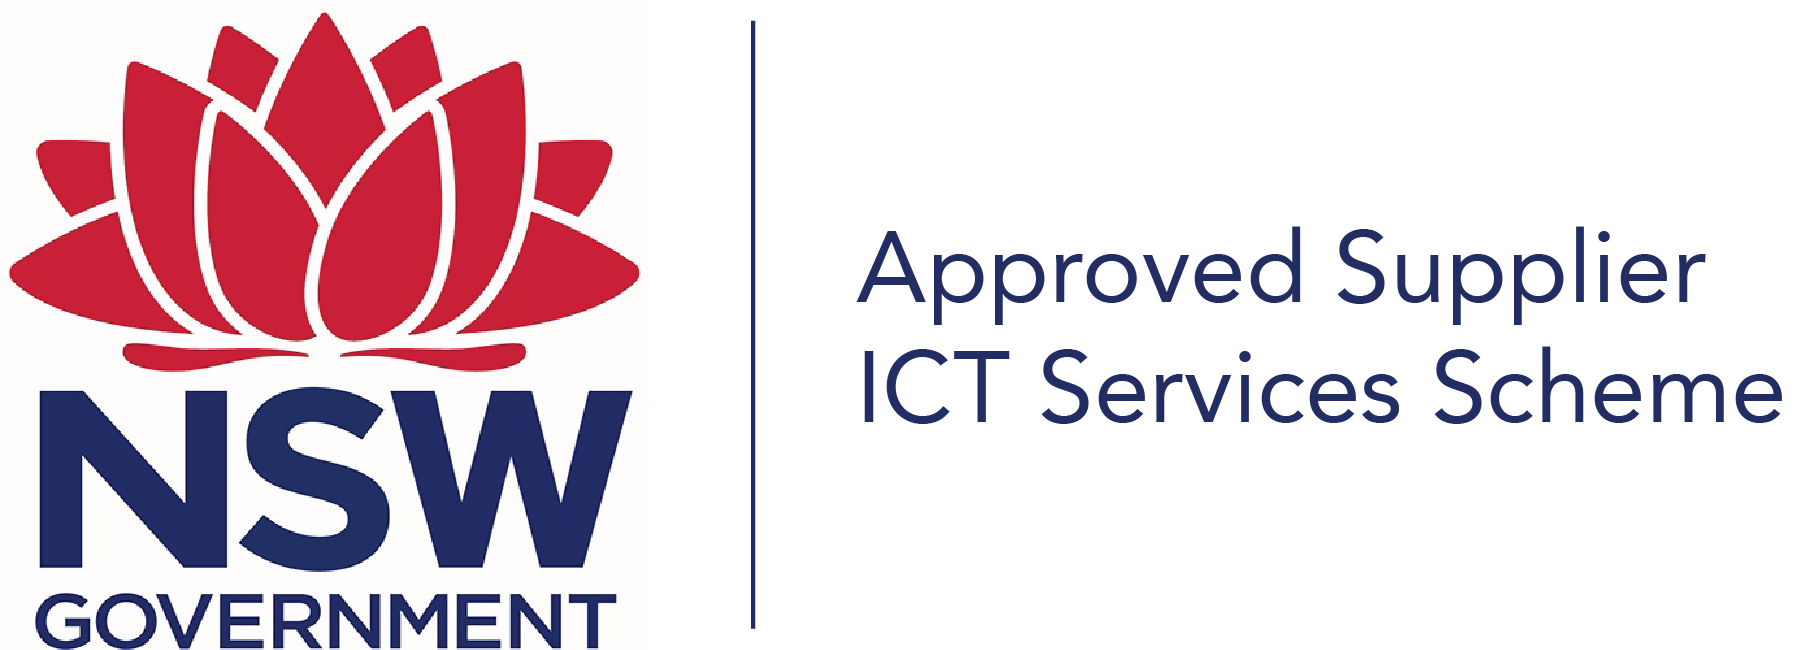 nsw govt ict services scheme